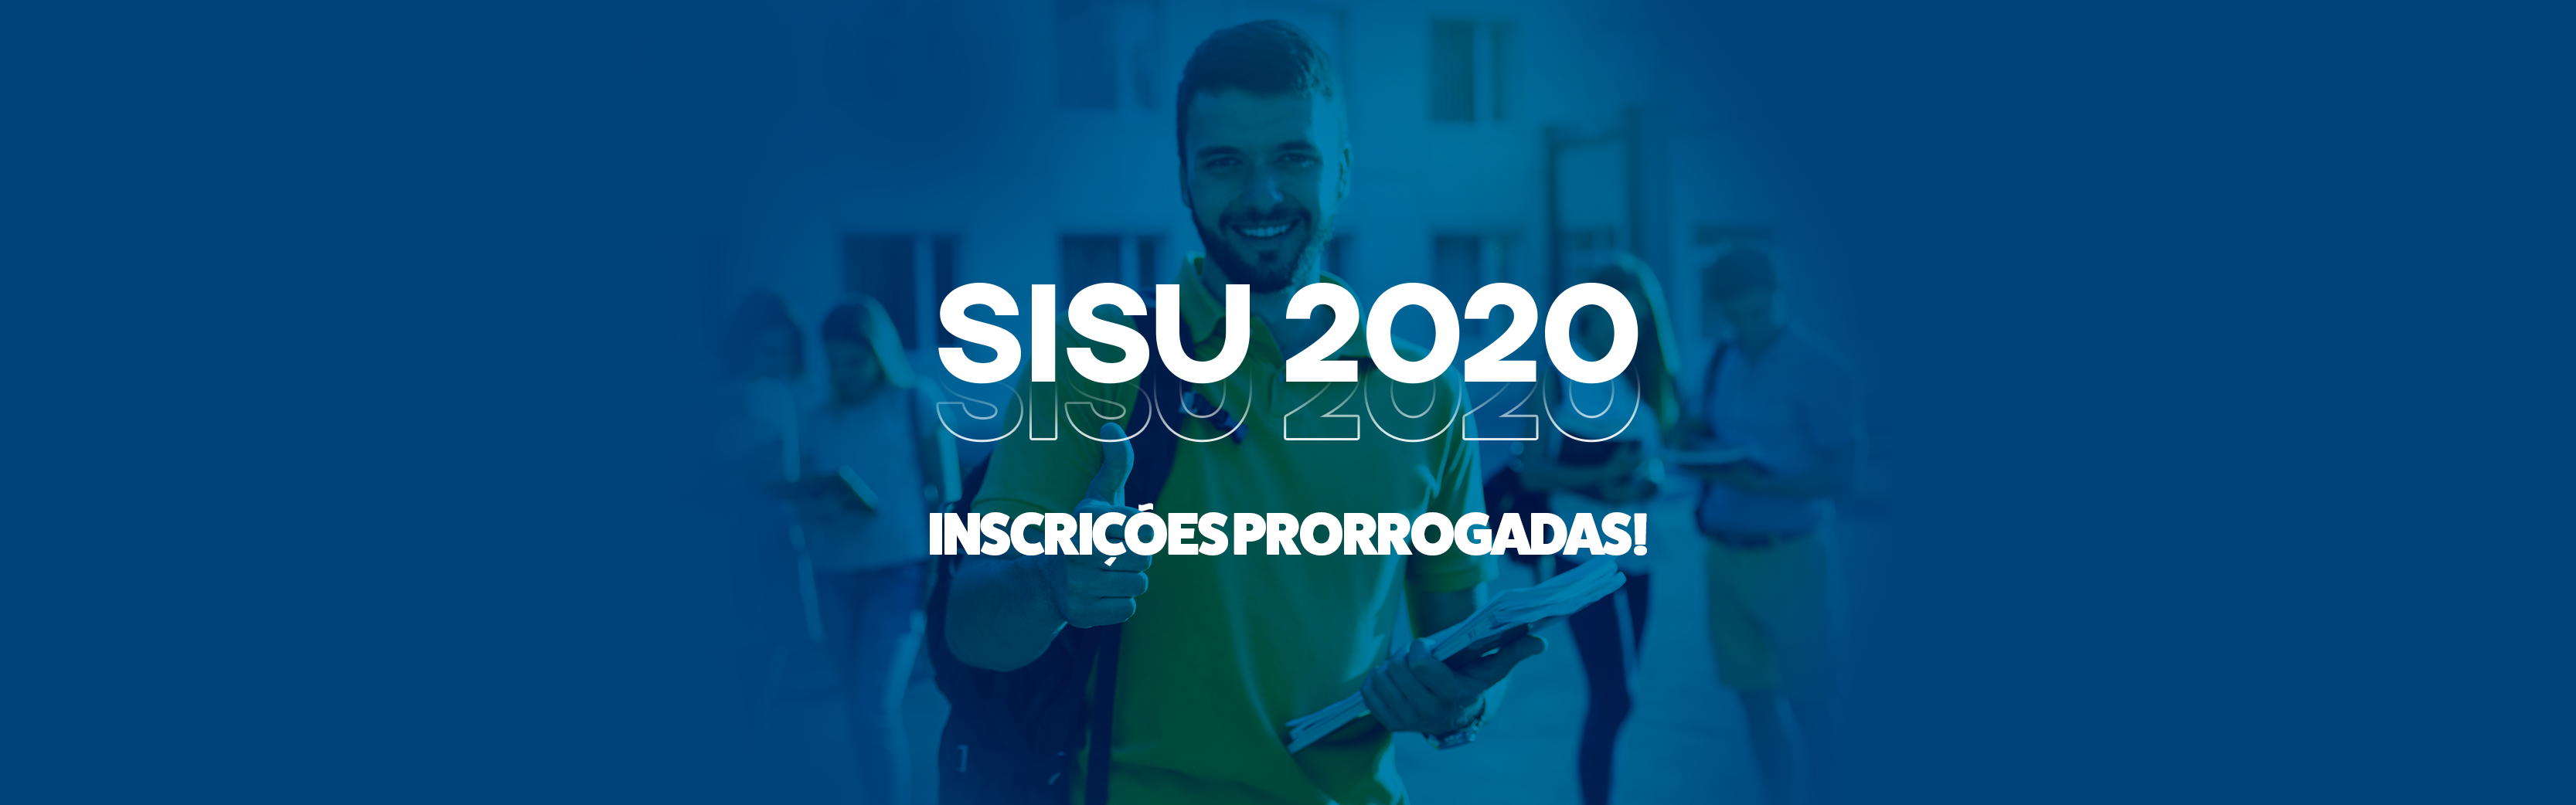 Inscrições do SISU 2020 foram prorrogadas: confira o novo prazo